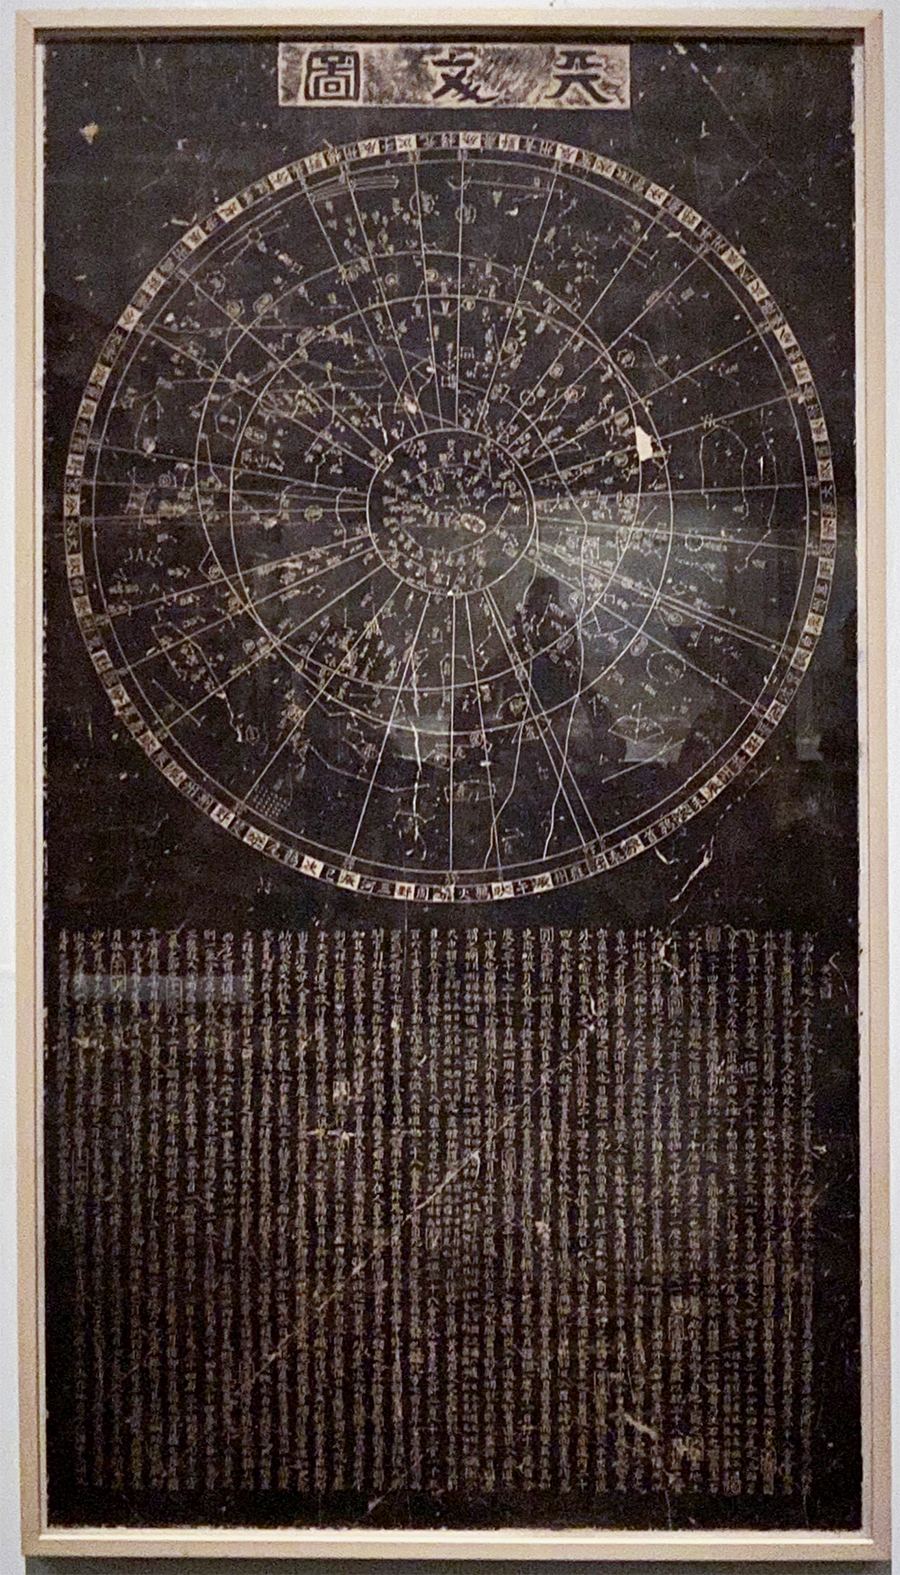 《天文图碑拓片》，南宋，摄于中国国家博物馆展厅。